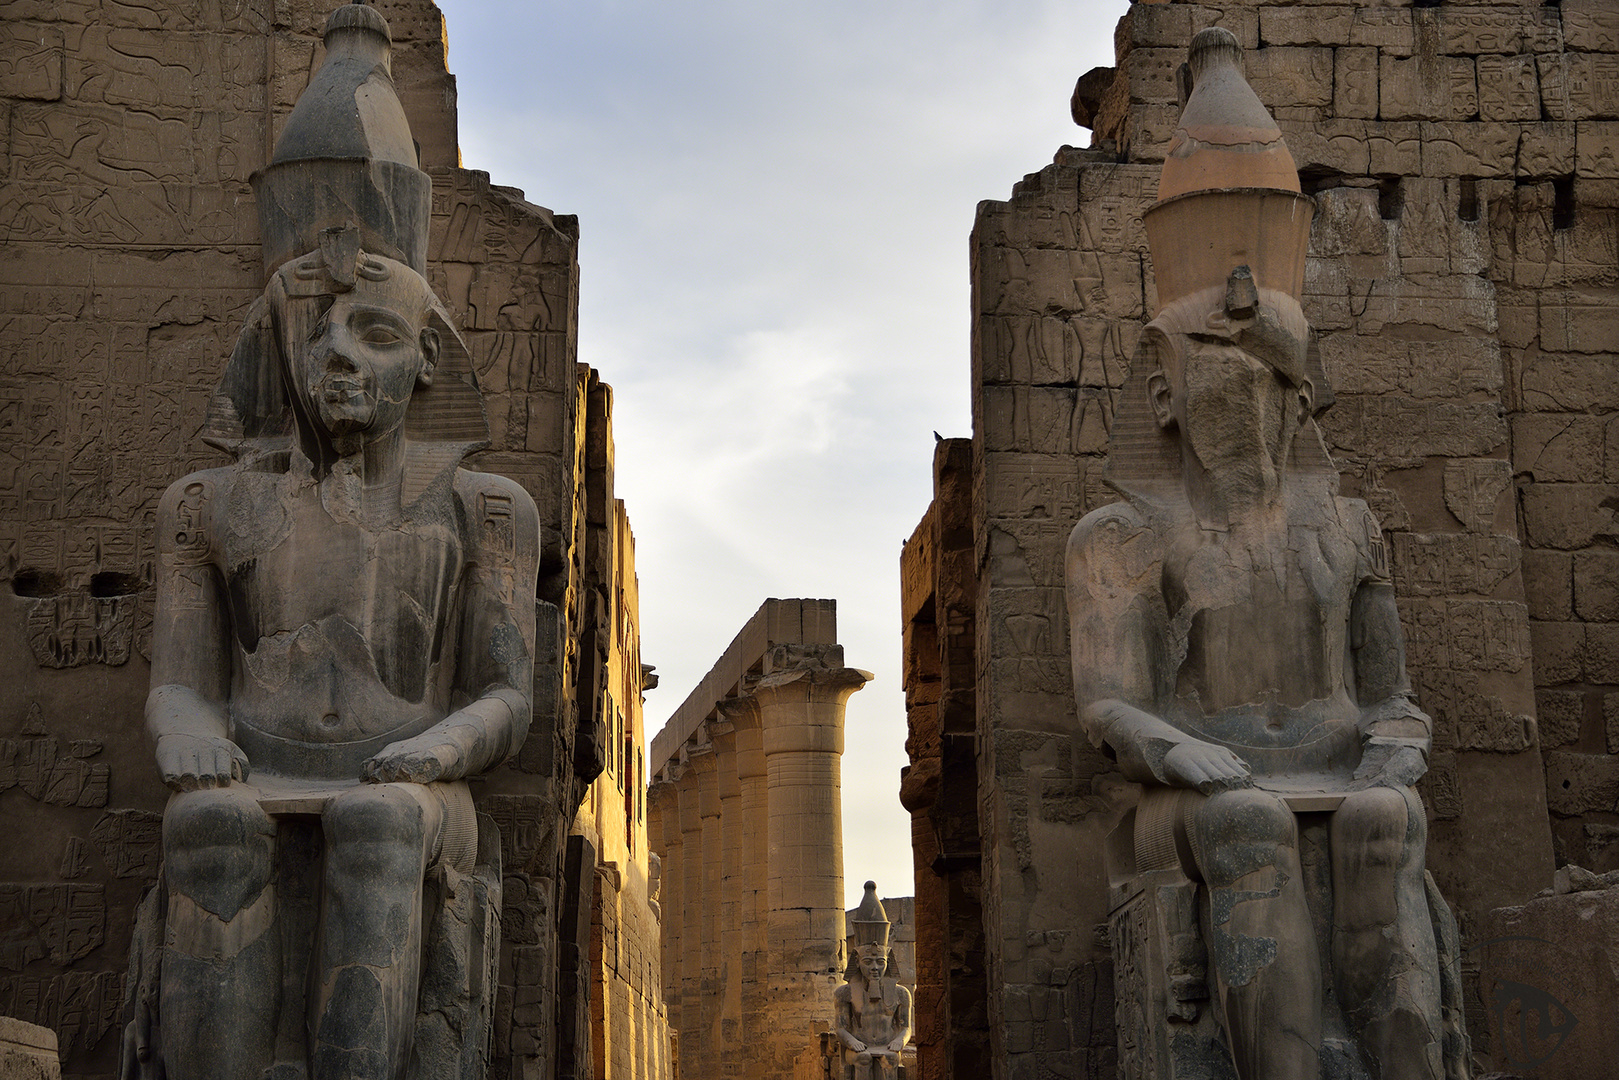 Pylon des Luxor Tempels